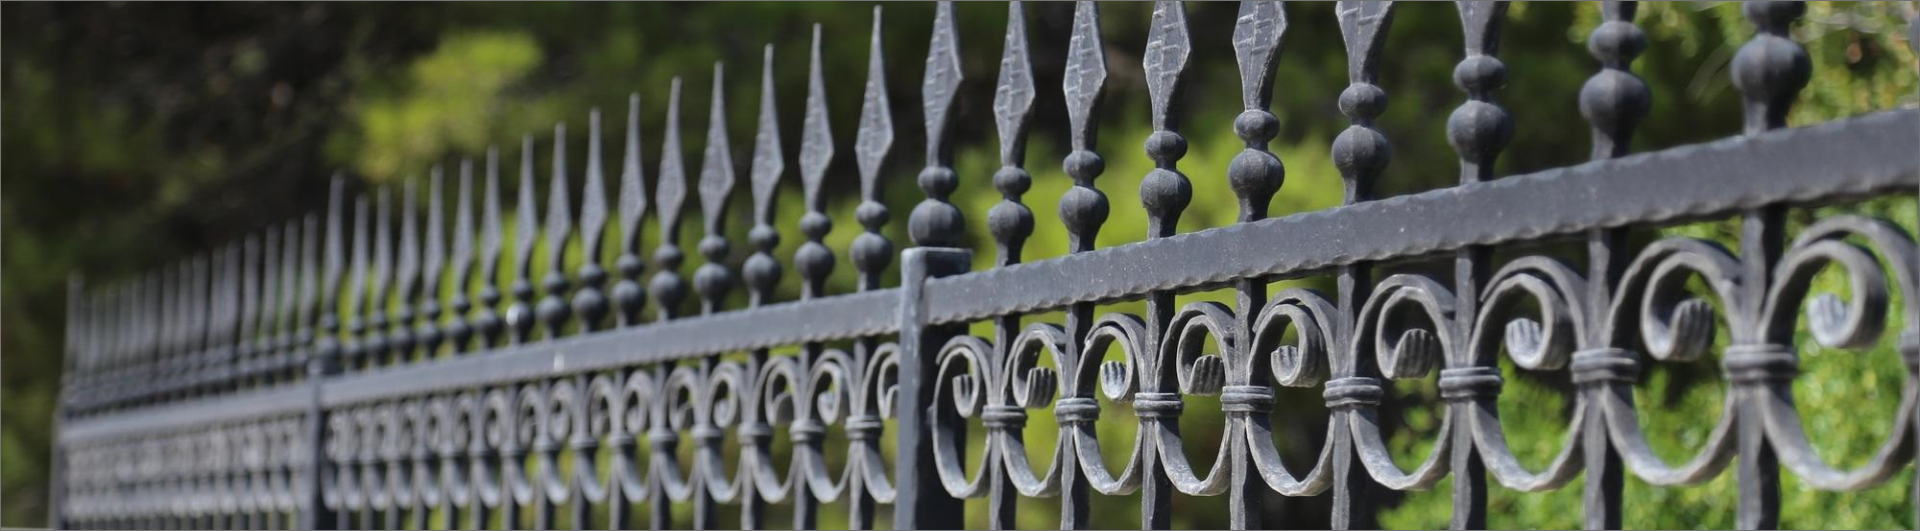 iron fence gate